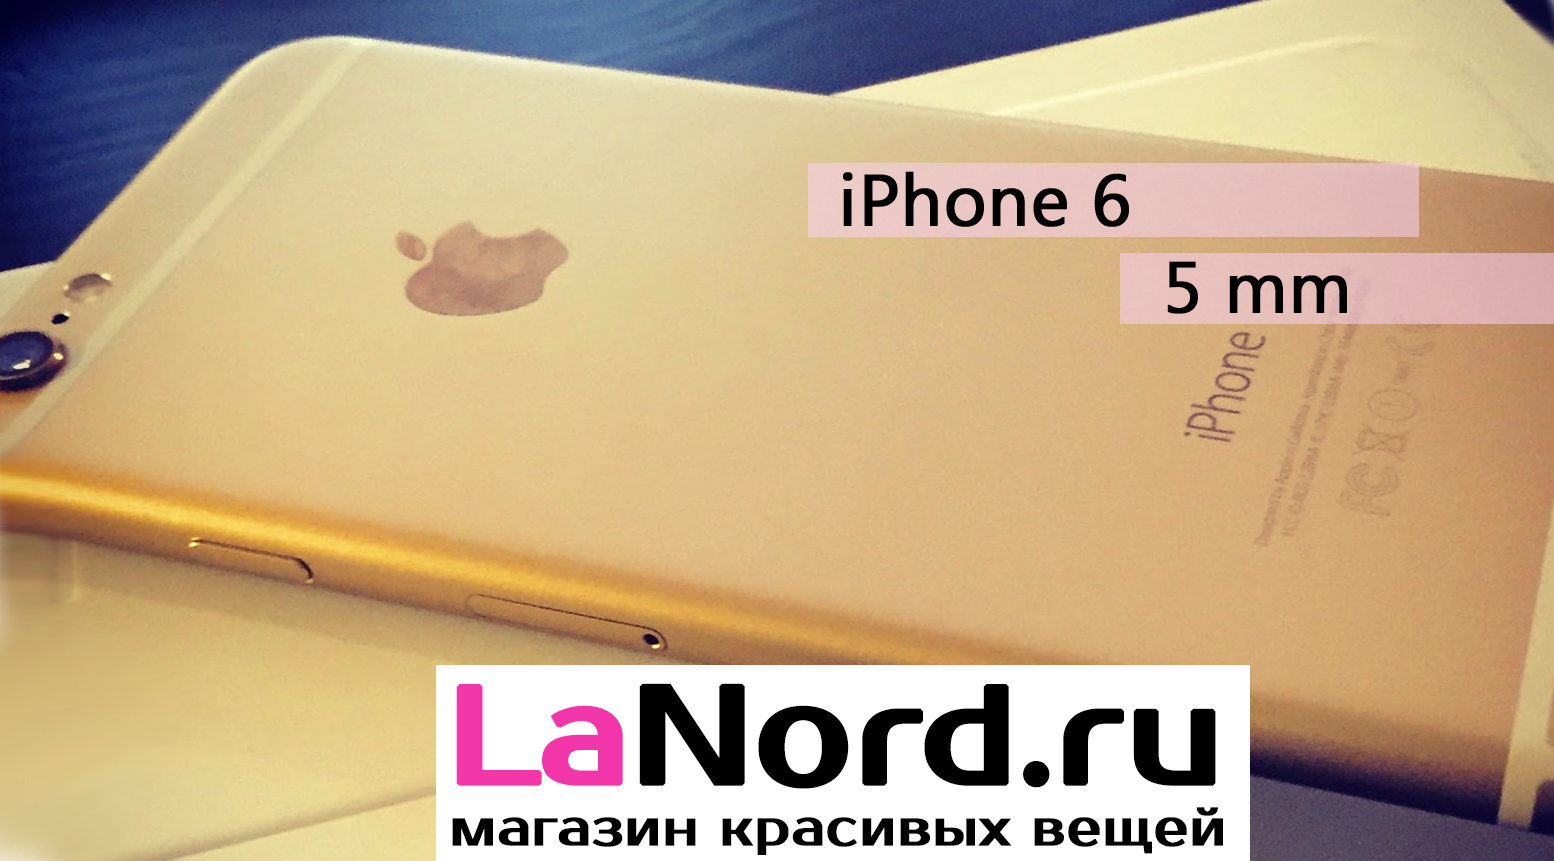 Apple iPhone 6 16GB Gold (золотой) восстановленный